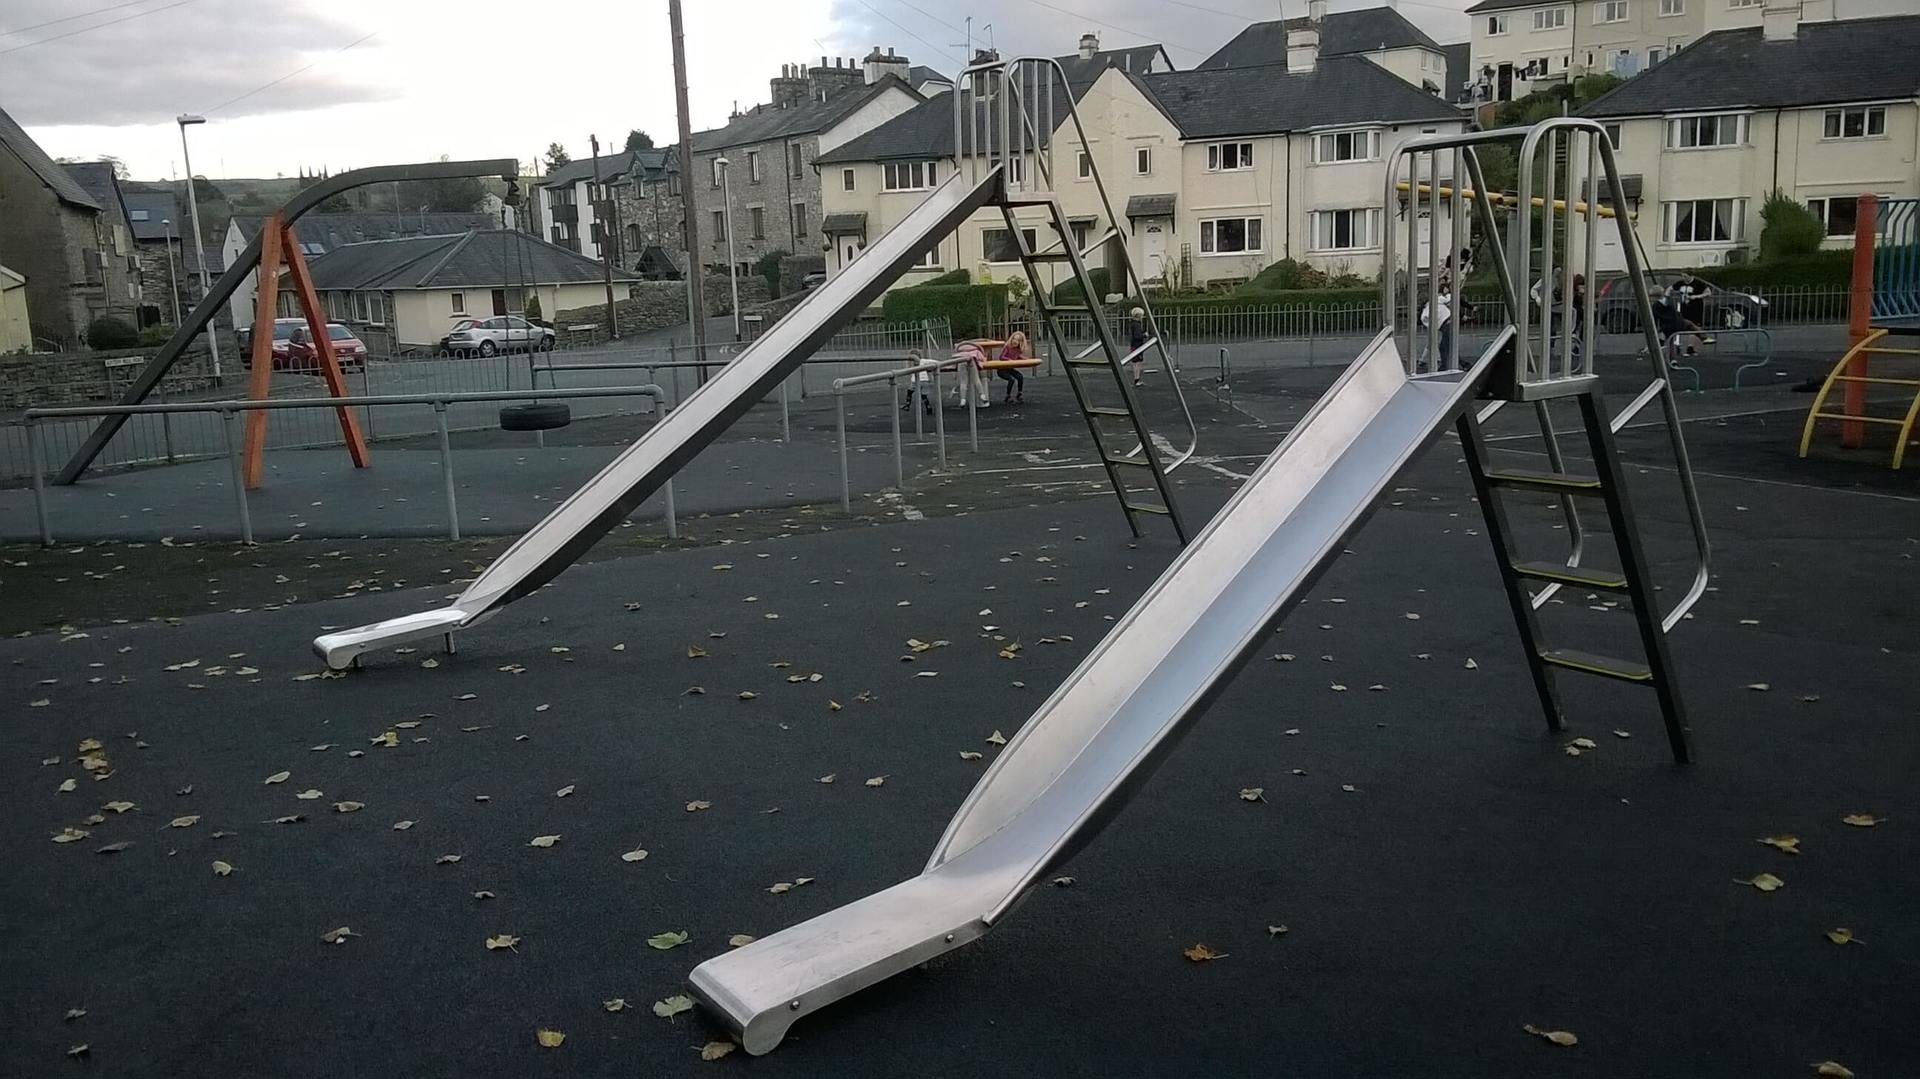 Two Metal Playground Slides